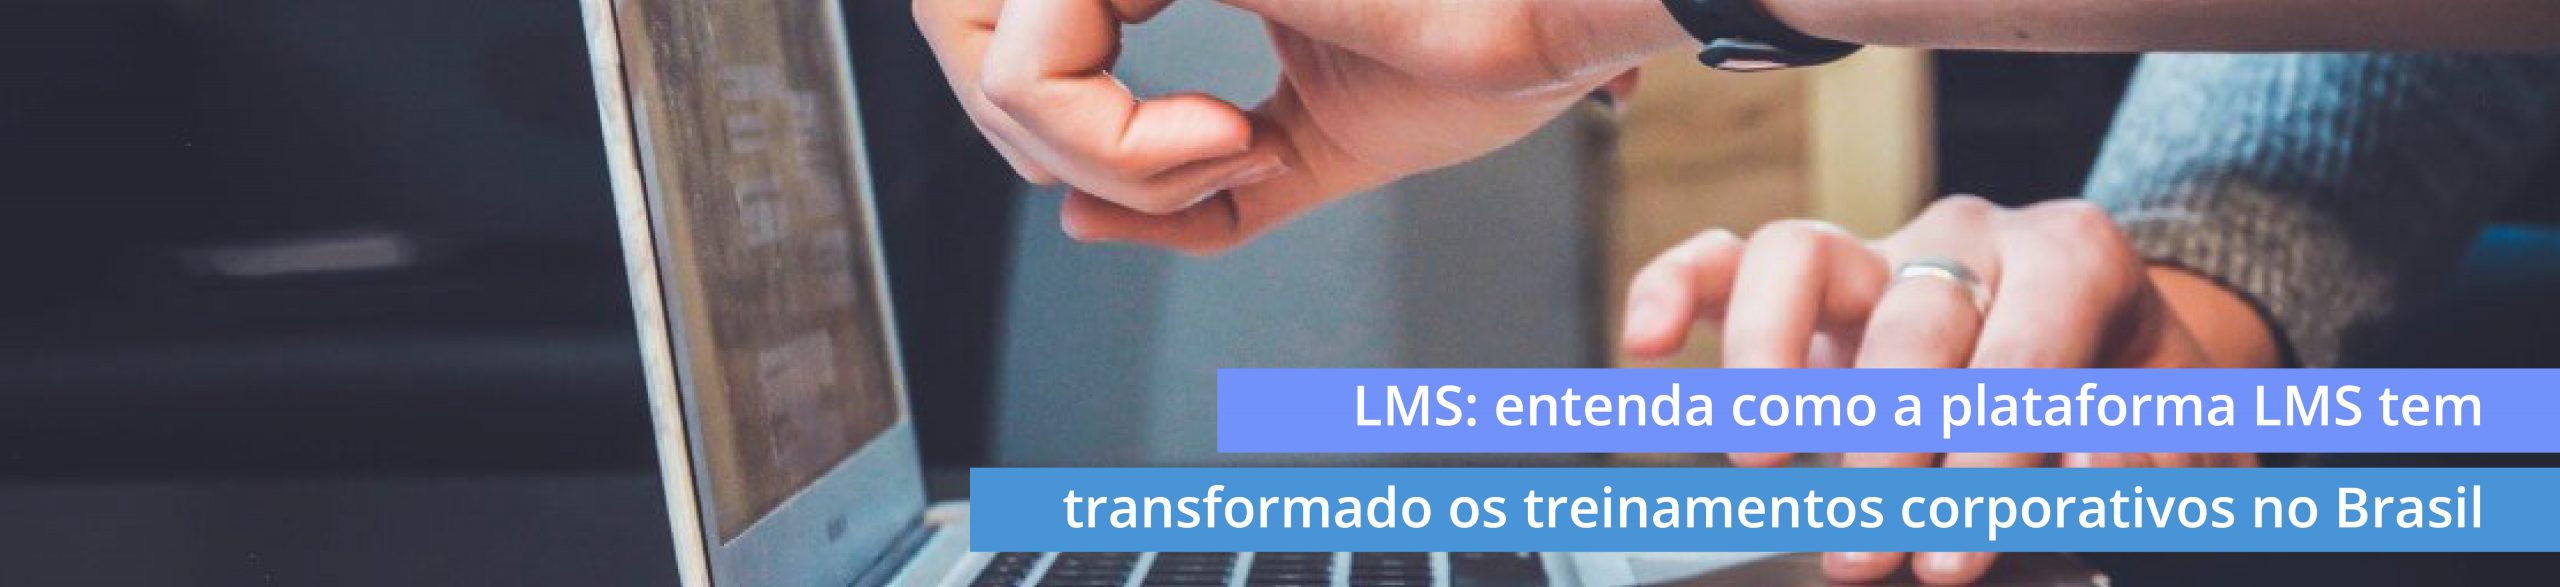 LMS: entenda como a plataforma LMS tem transformado os treinamentos corporativos no Brasil